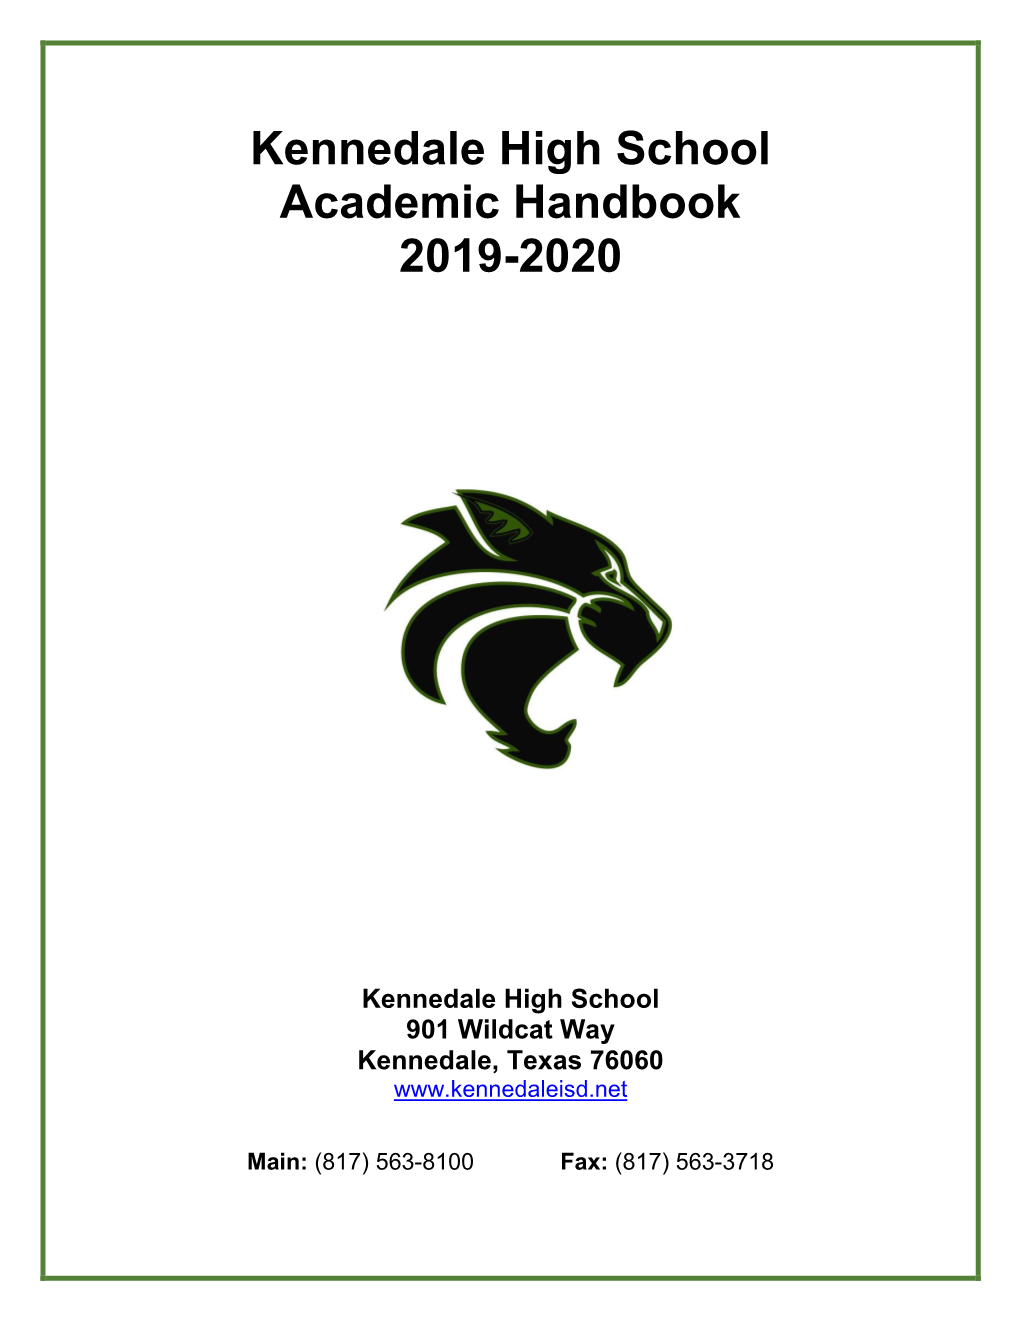 Kennedale High School Academic Handbook 2019-2020